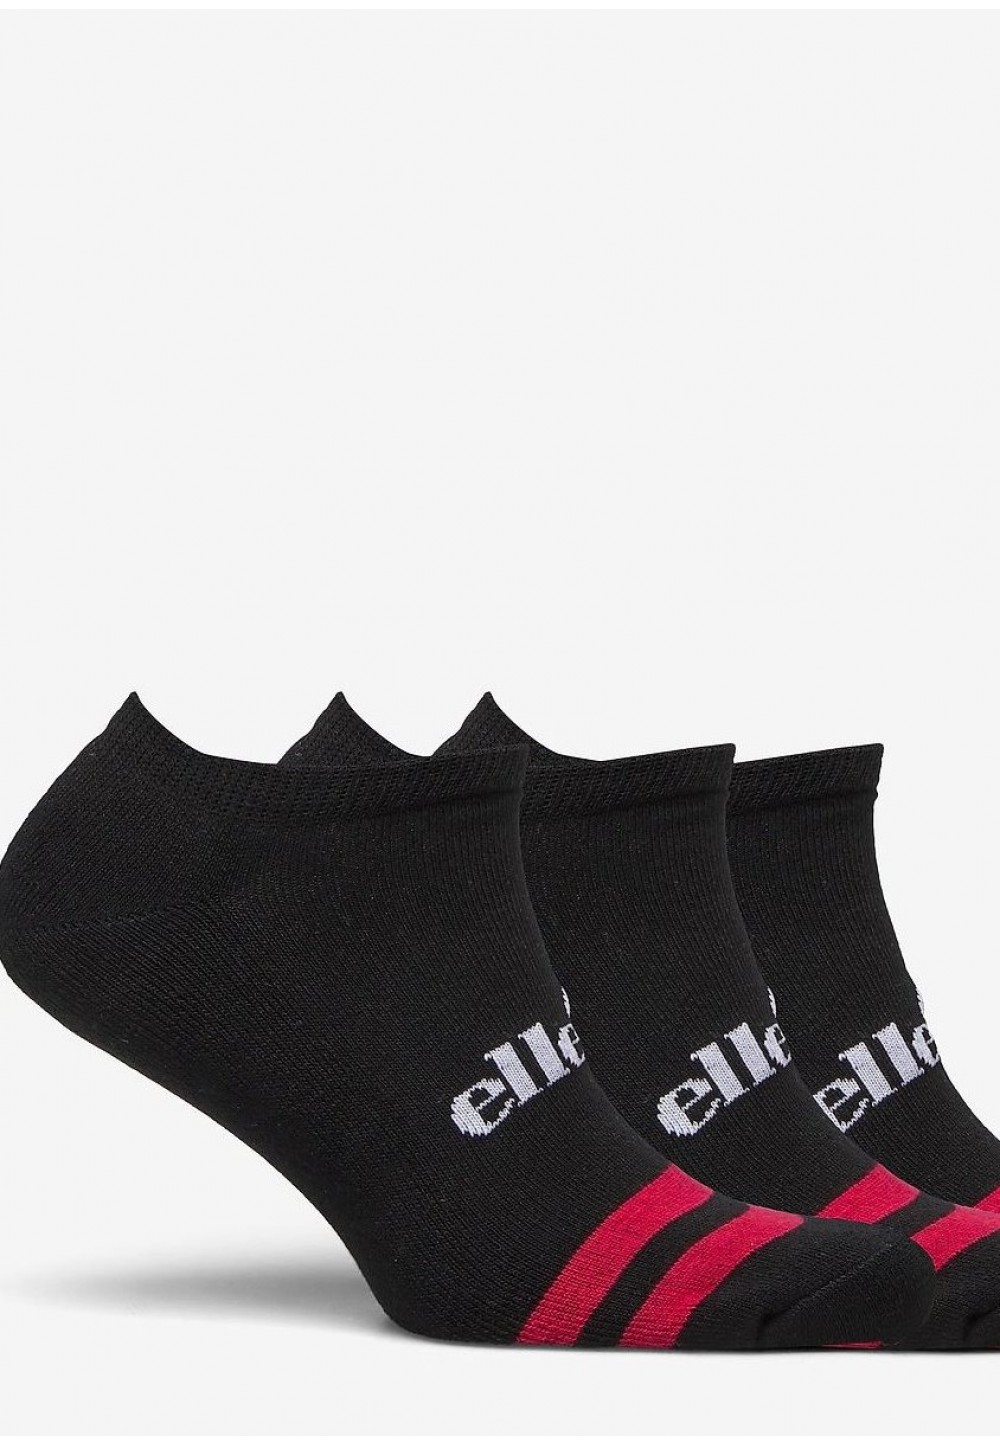 Чёрные носки в упаковке с лого